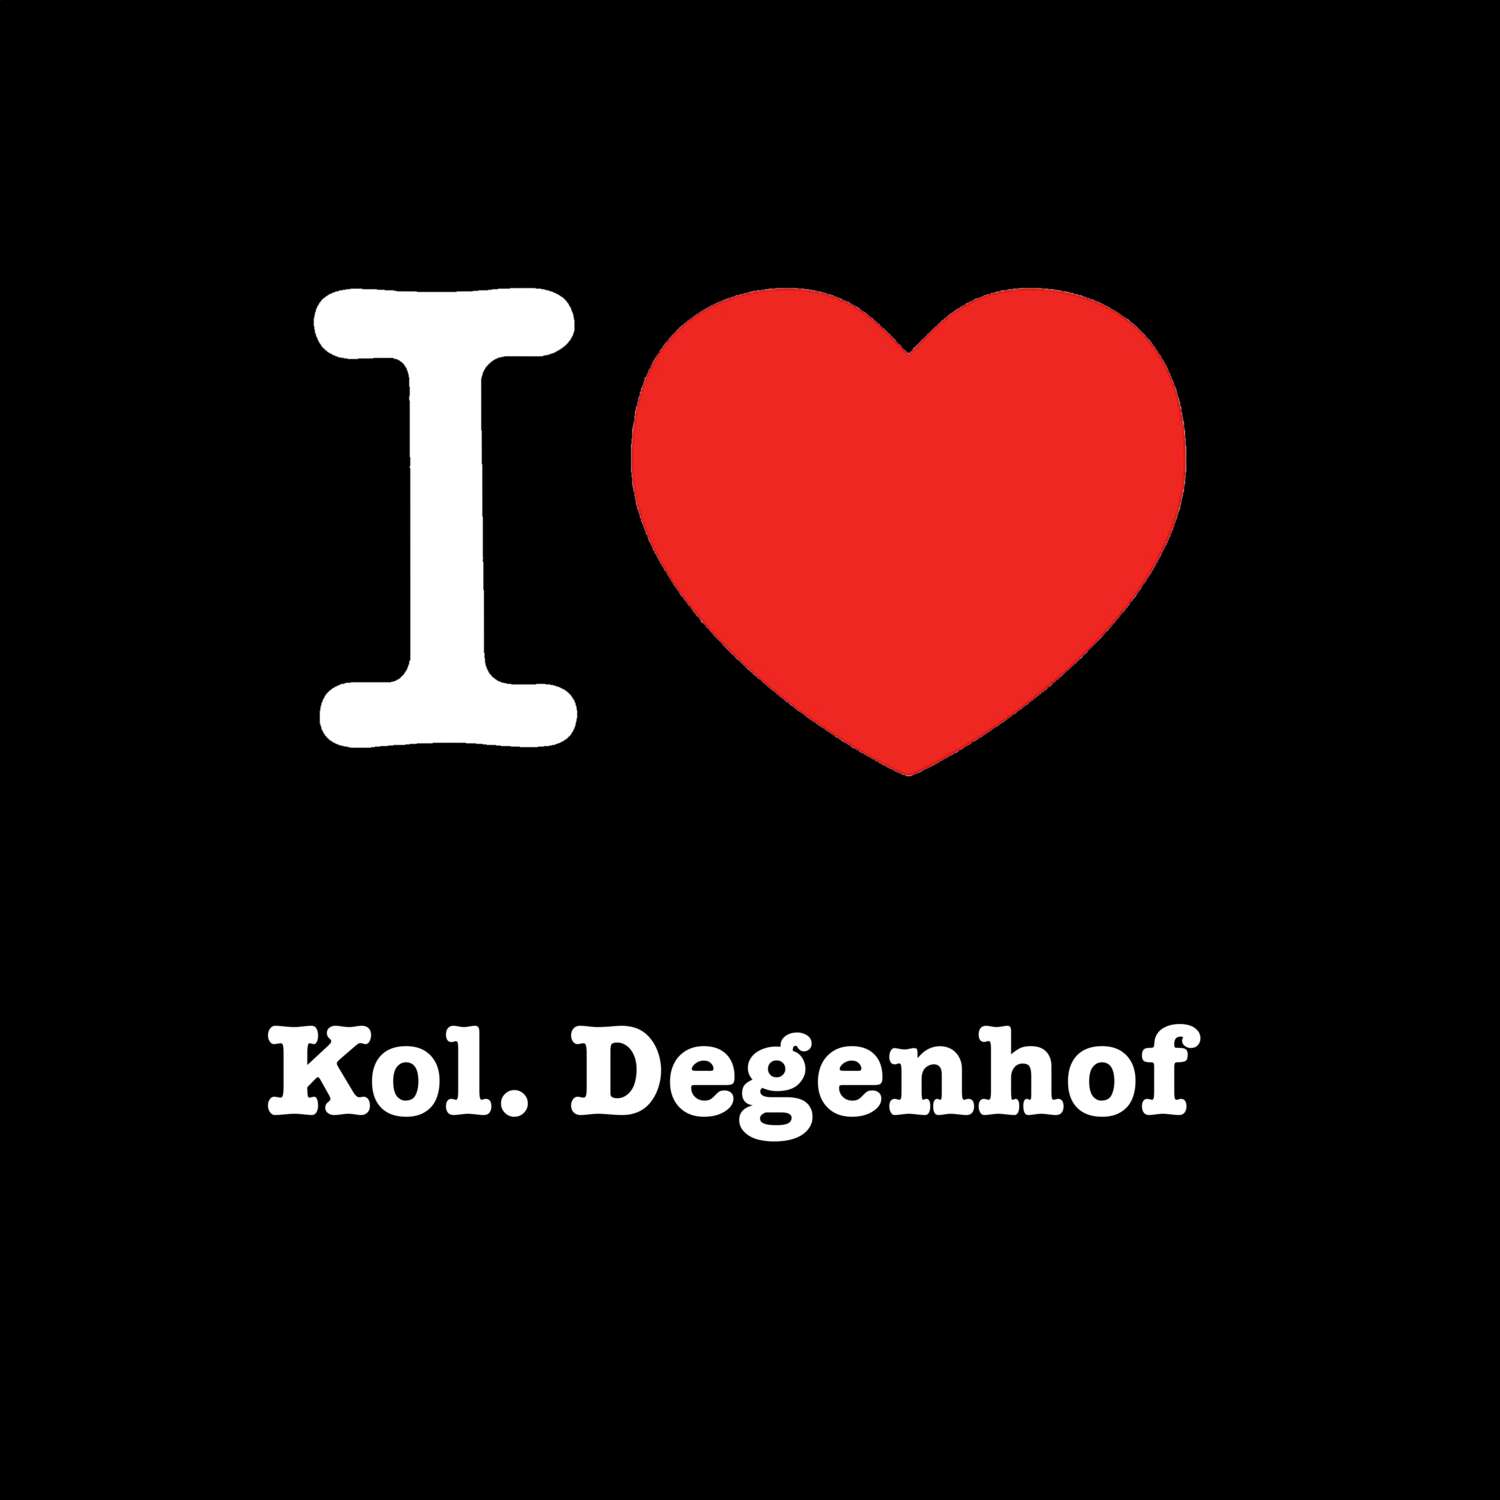 Kol. Degenhof T-Shirt »I love«